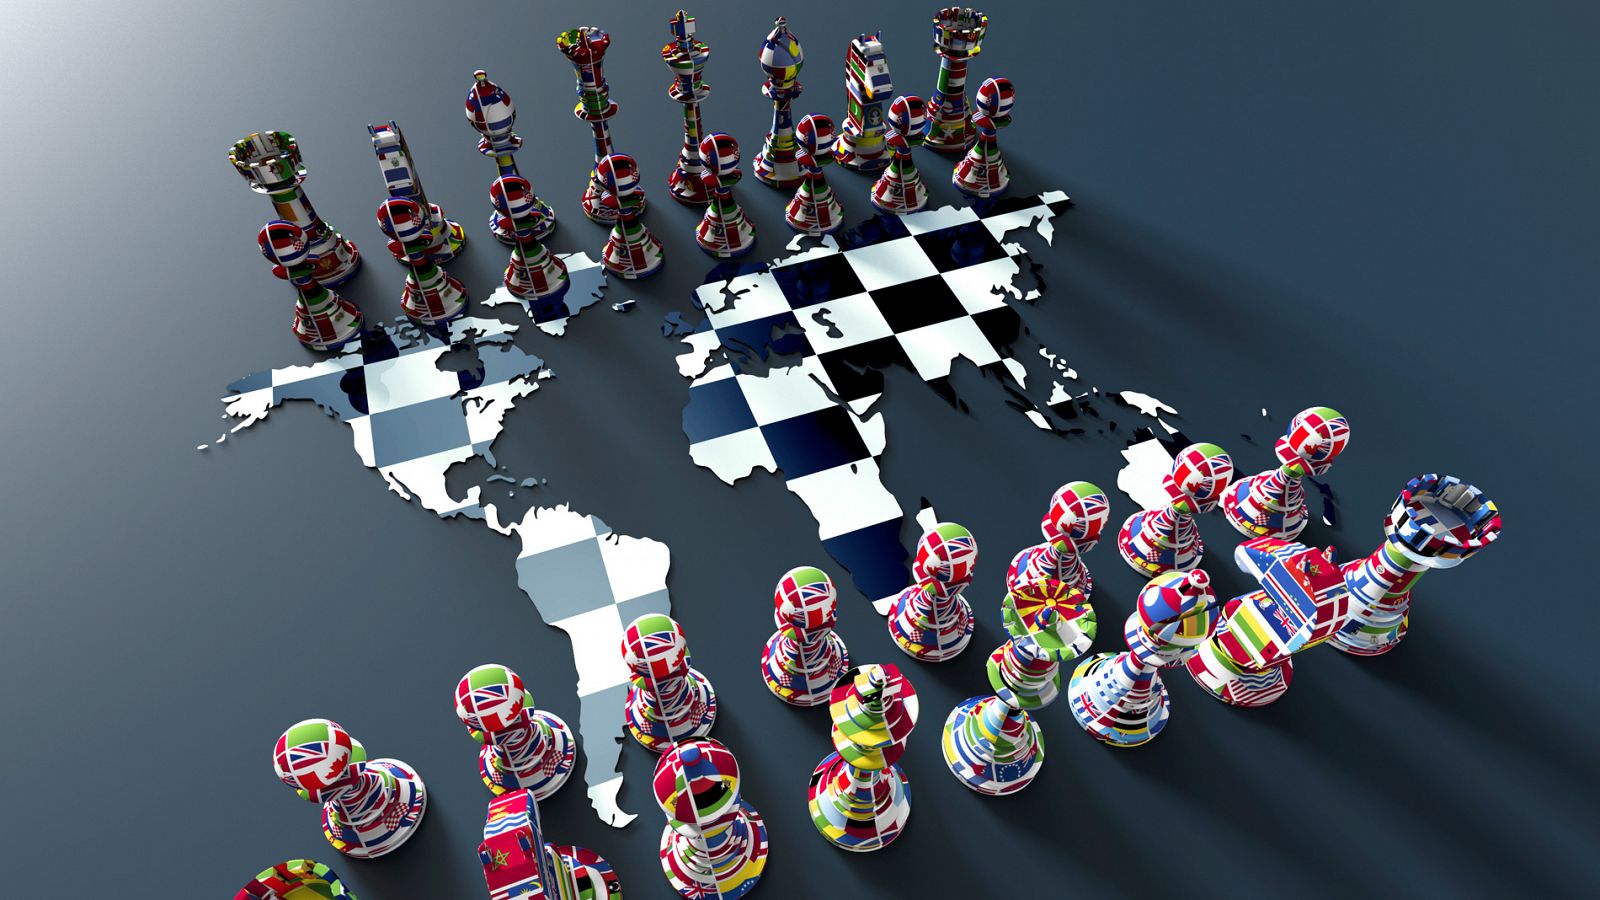 Estas serían las partidas de ajedrez del 2019 si el mapamundi fuera un tablero